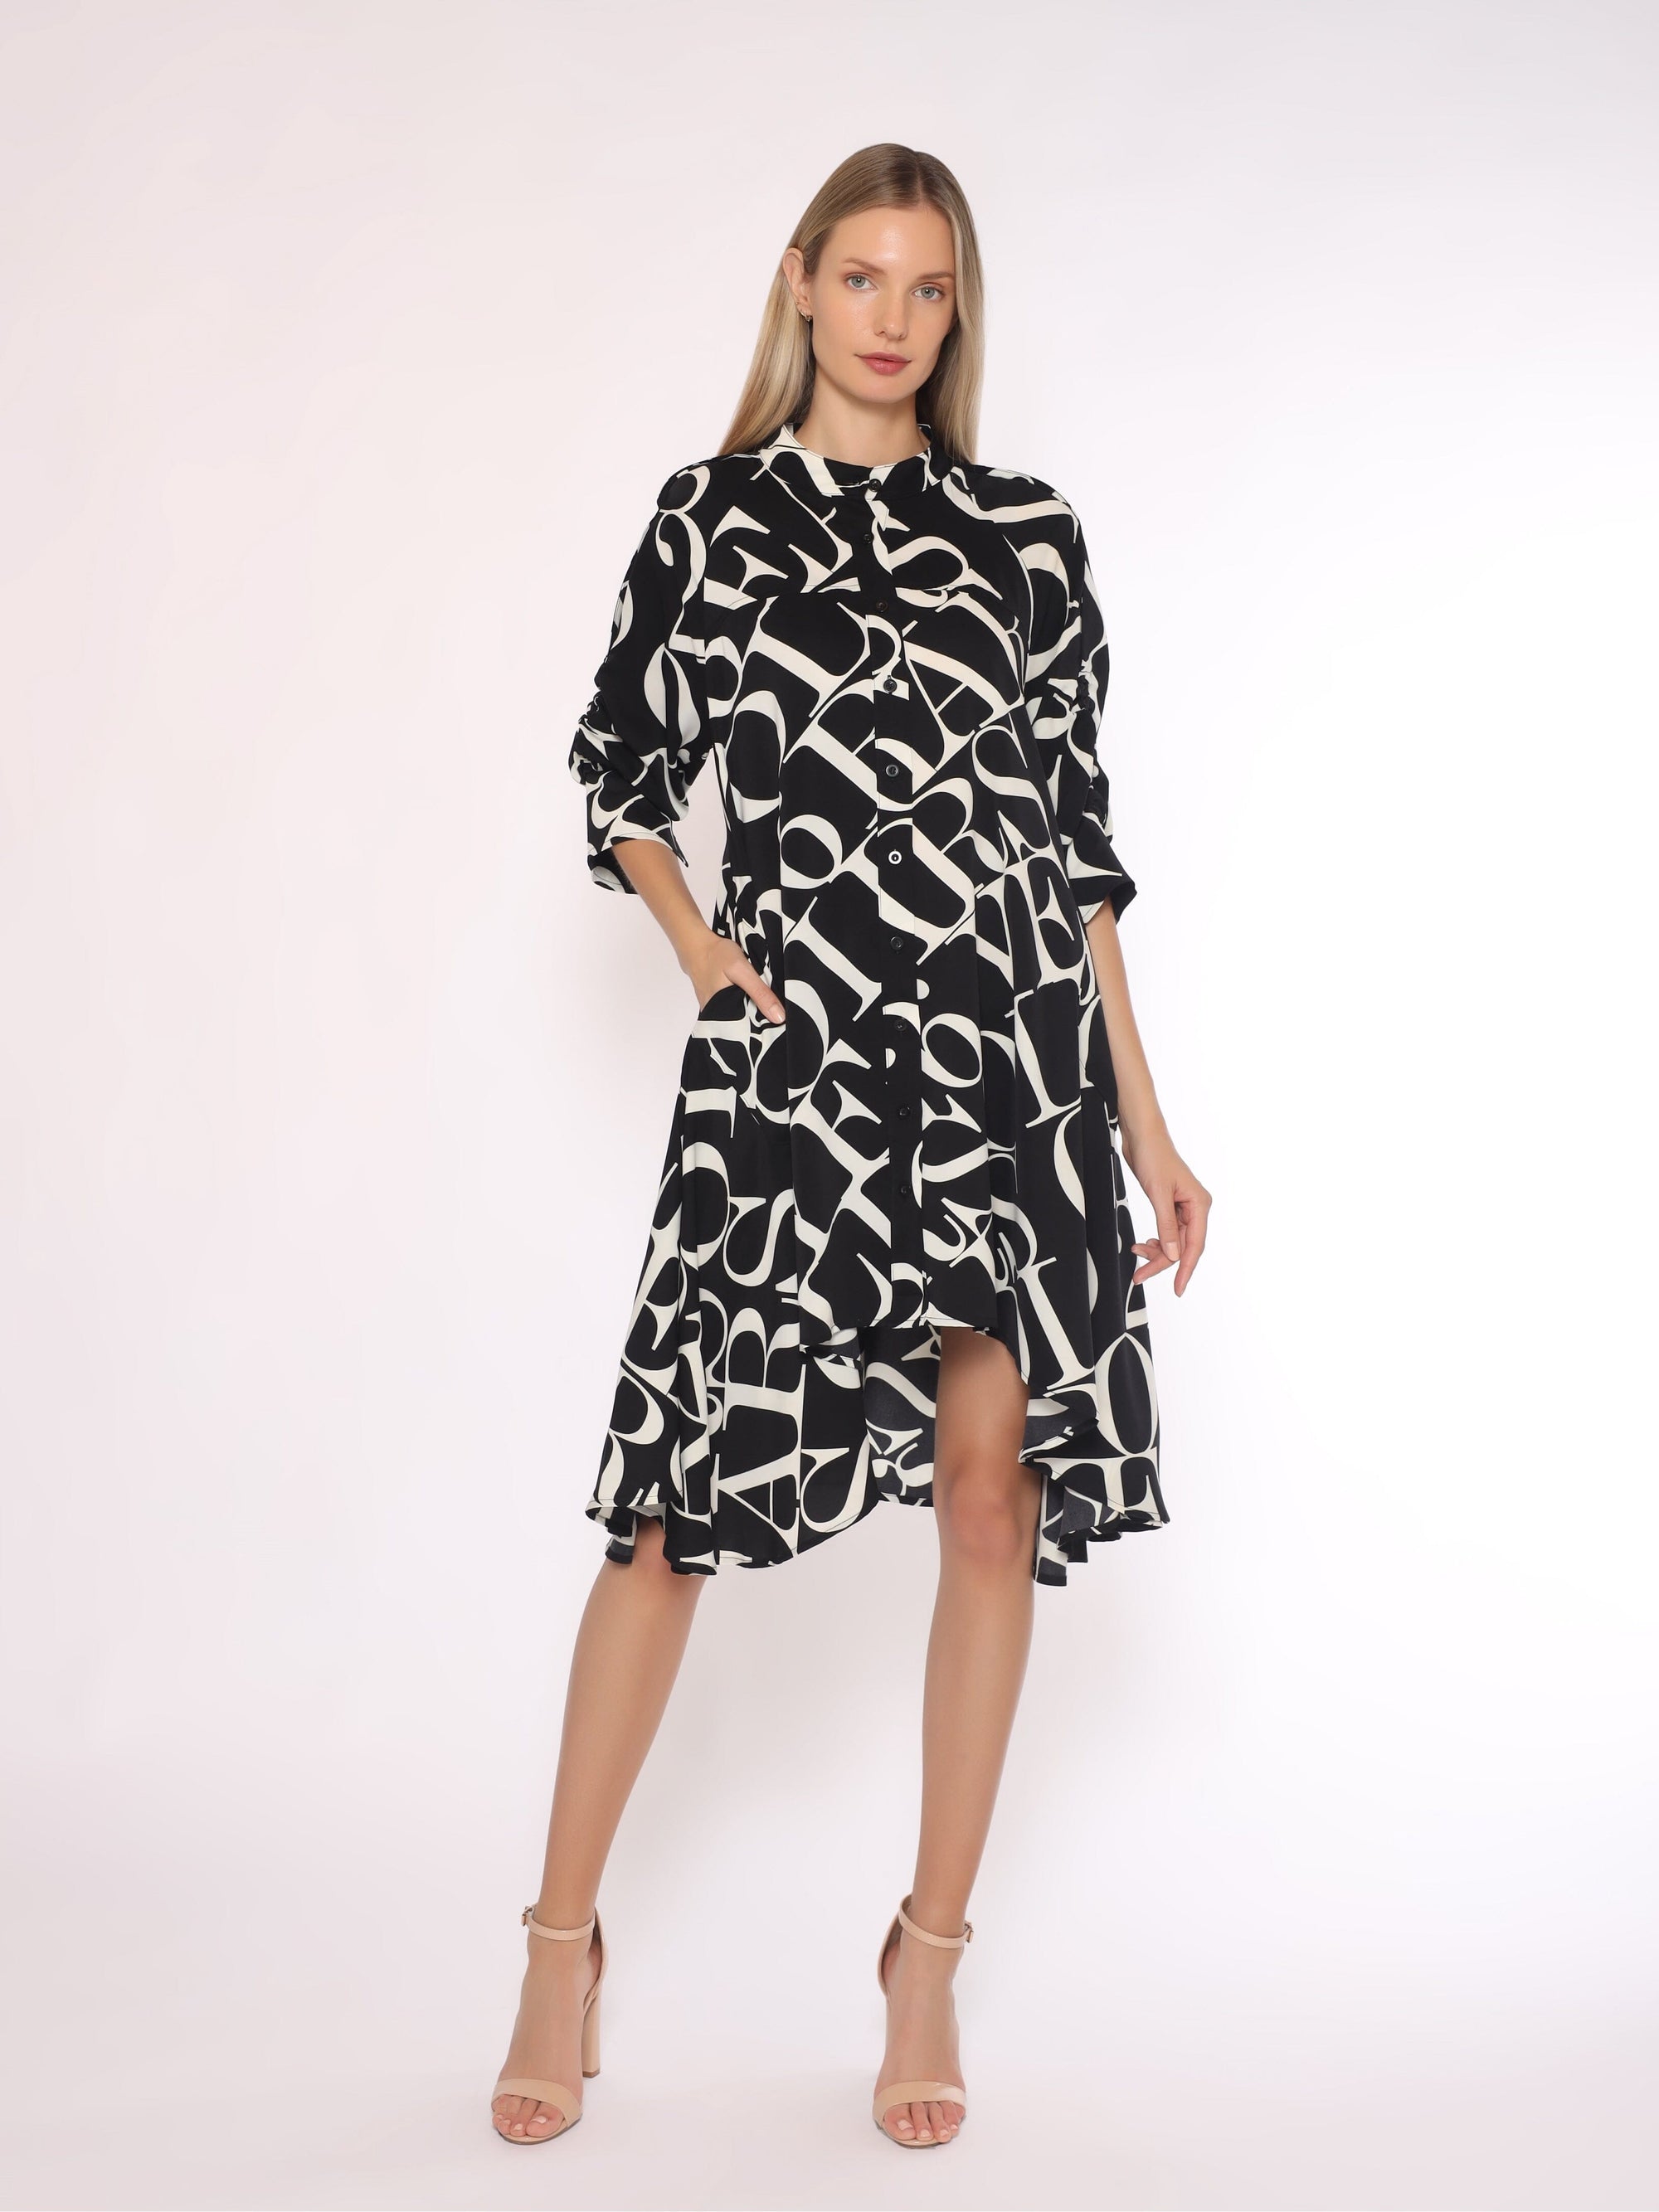 Asymmetrical Blouse DRESS Gracia Fashion BLACK/WHITE S 